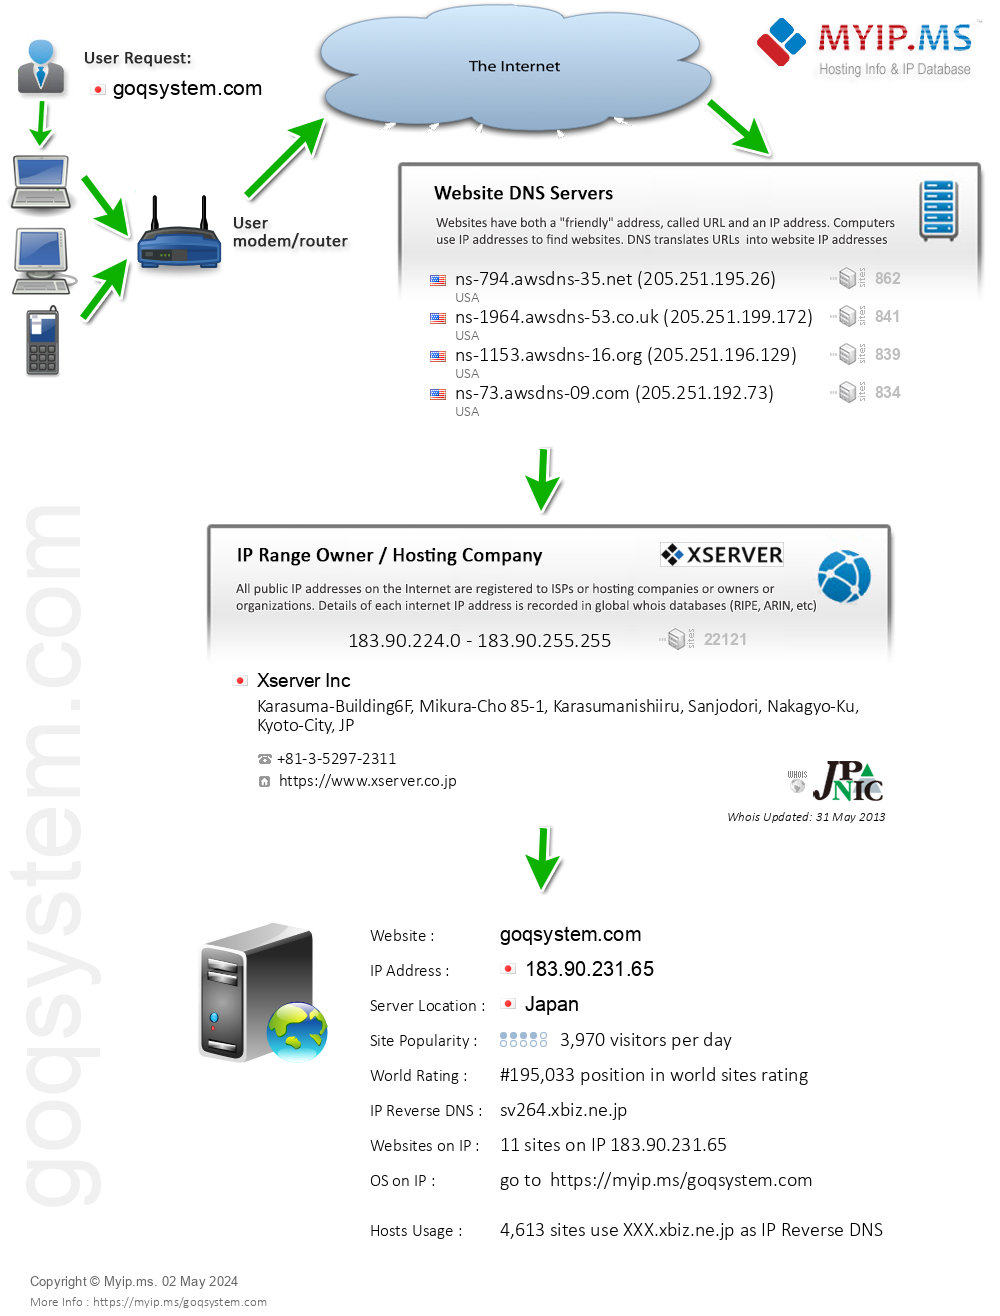 Goqsystem.com - Website Hosting Visual IP Diagram